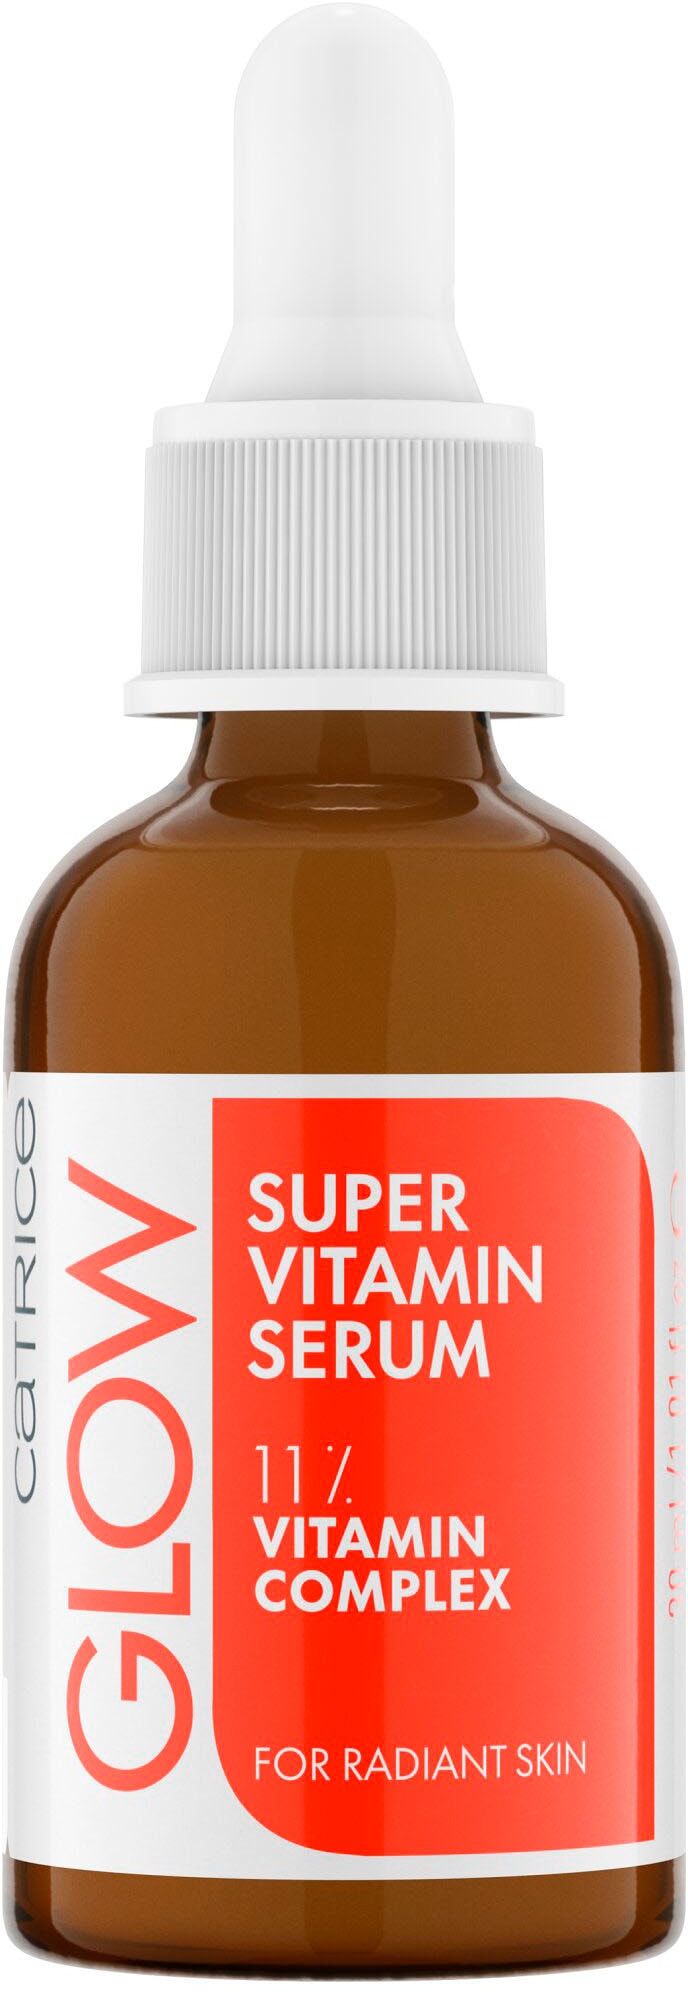 online Serum« Super kaufen Vitamin »Glow Catrice Gesichtsserum